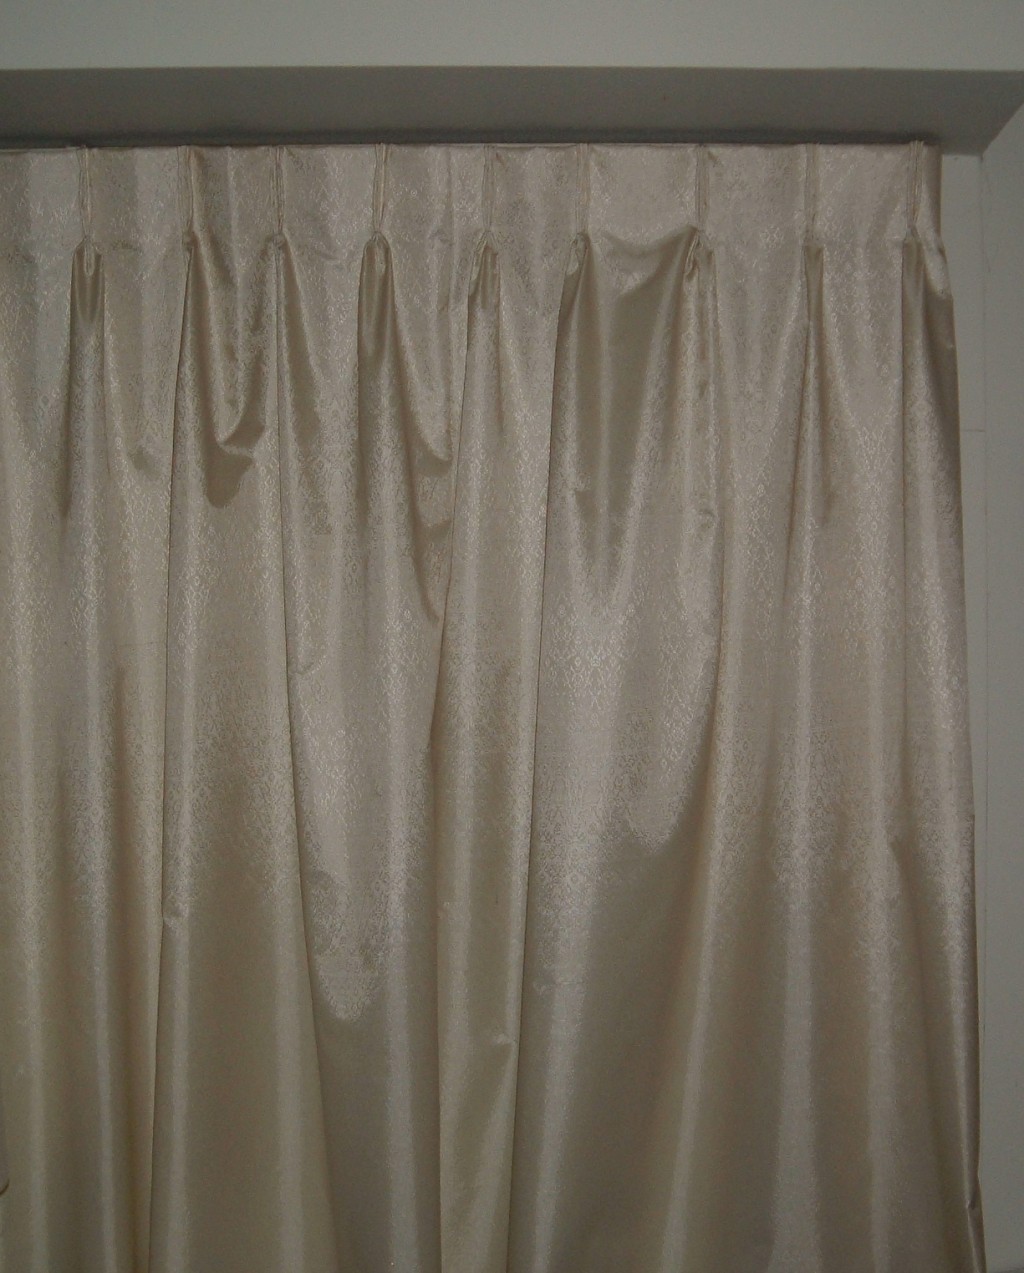 Curtain Wall in Curtain